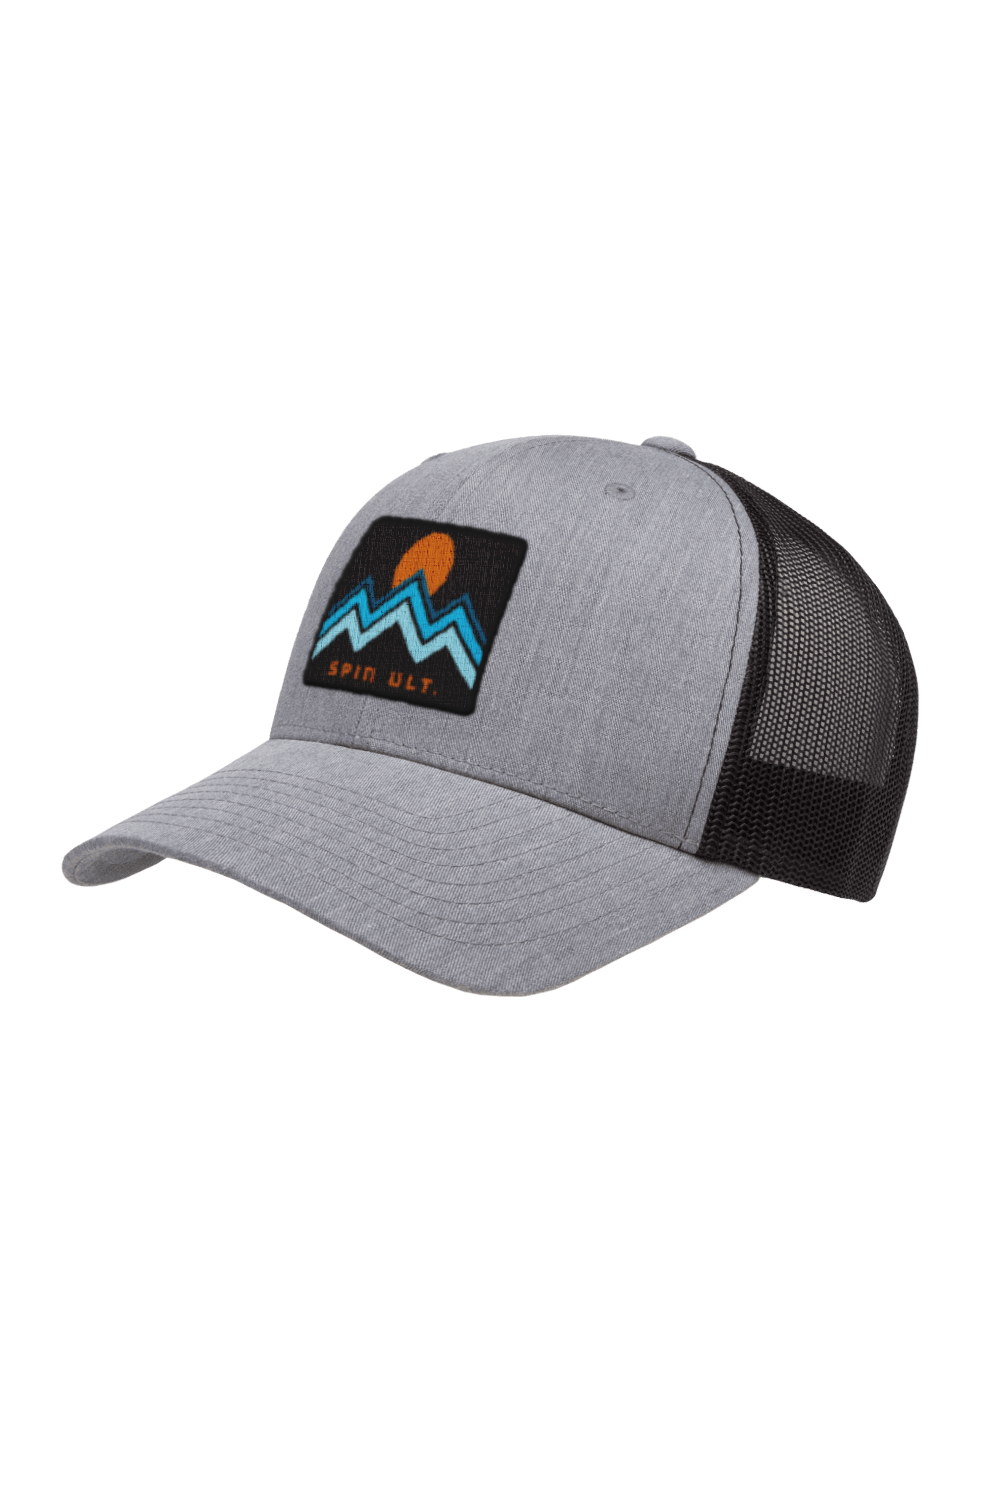 Mountains Trucker Hat